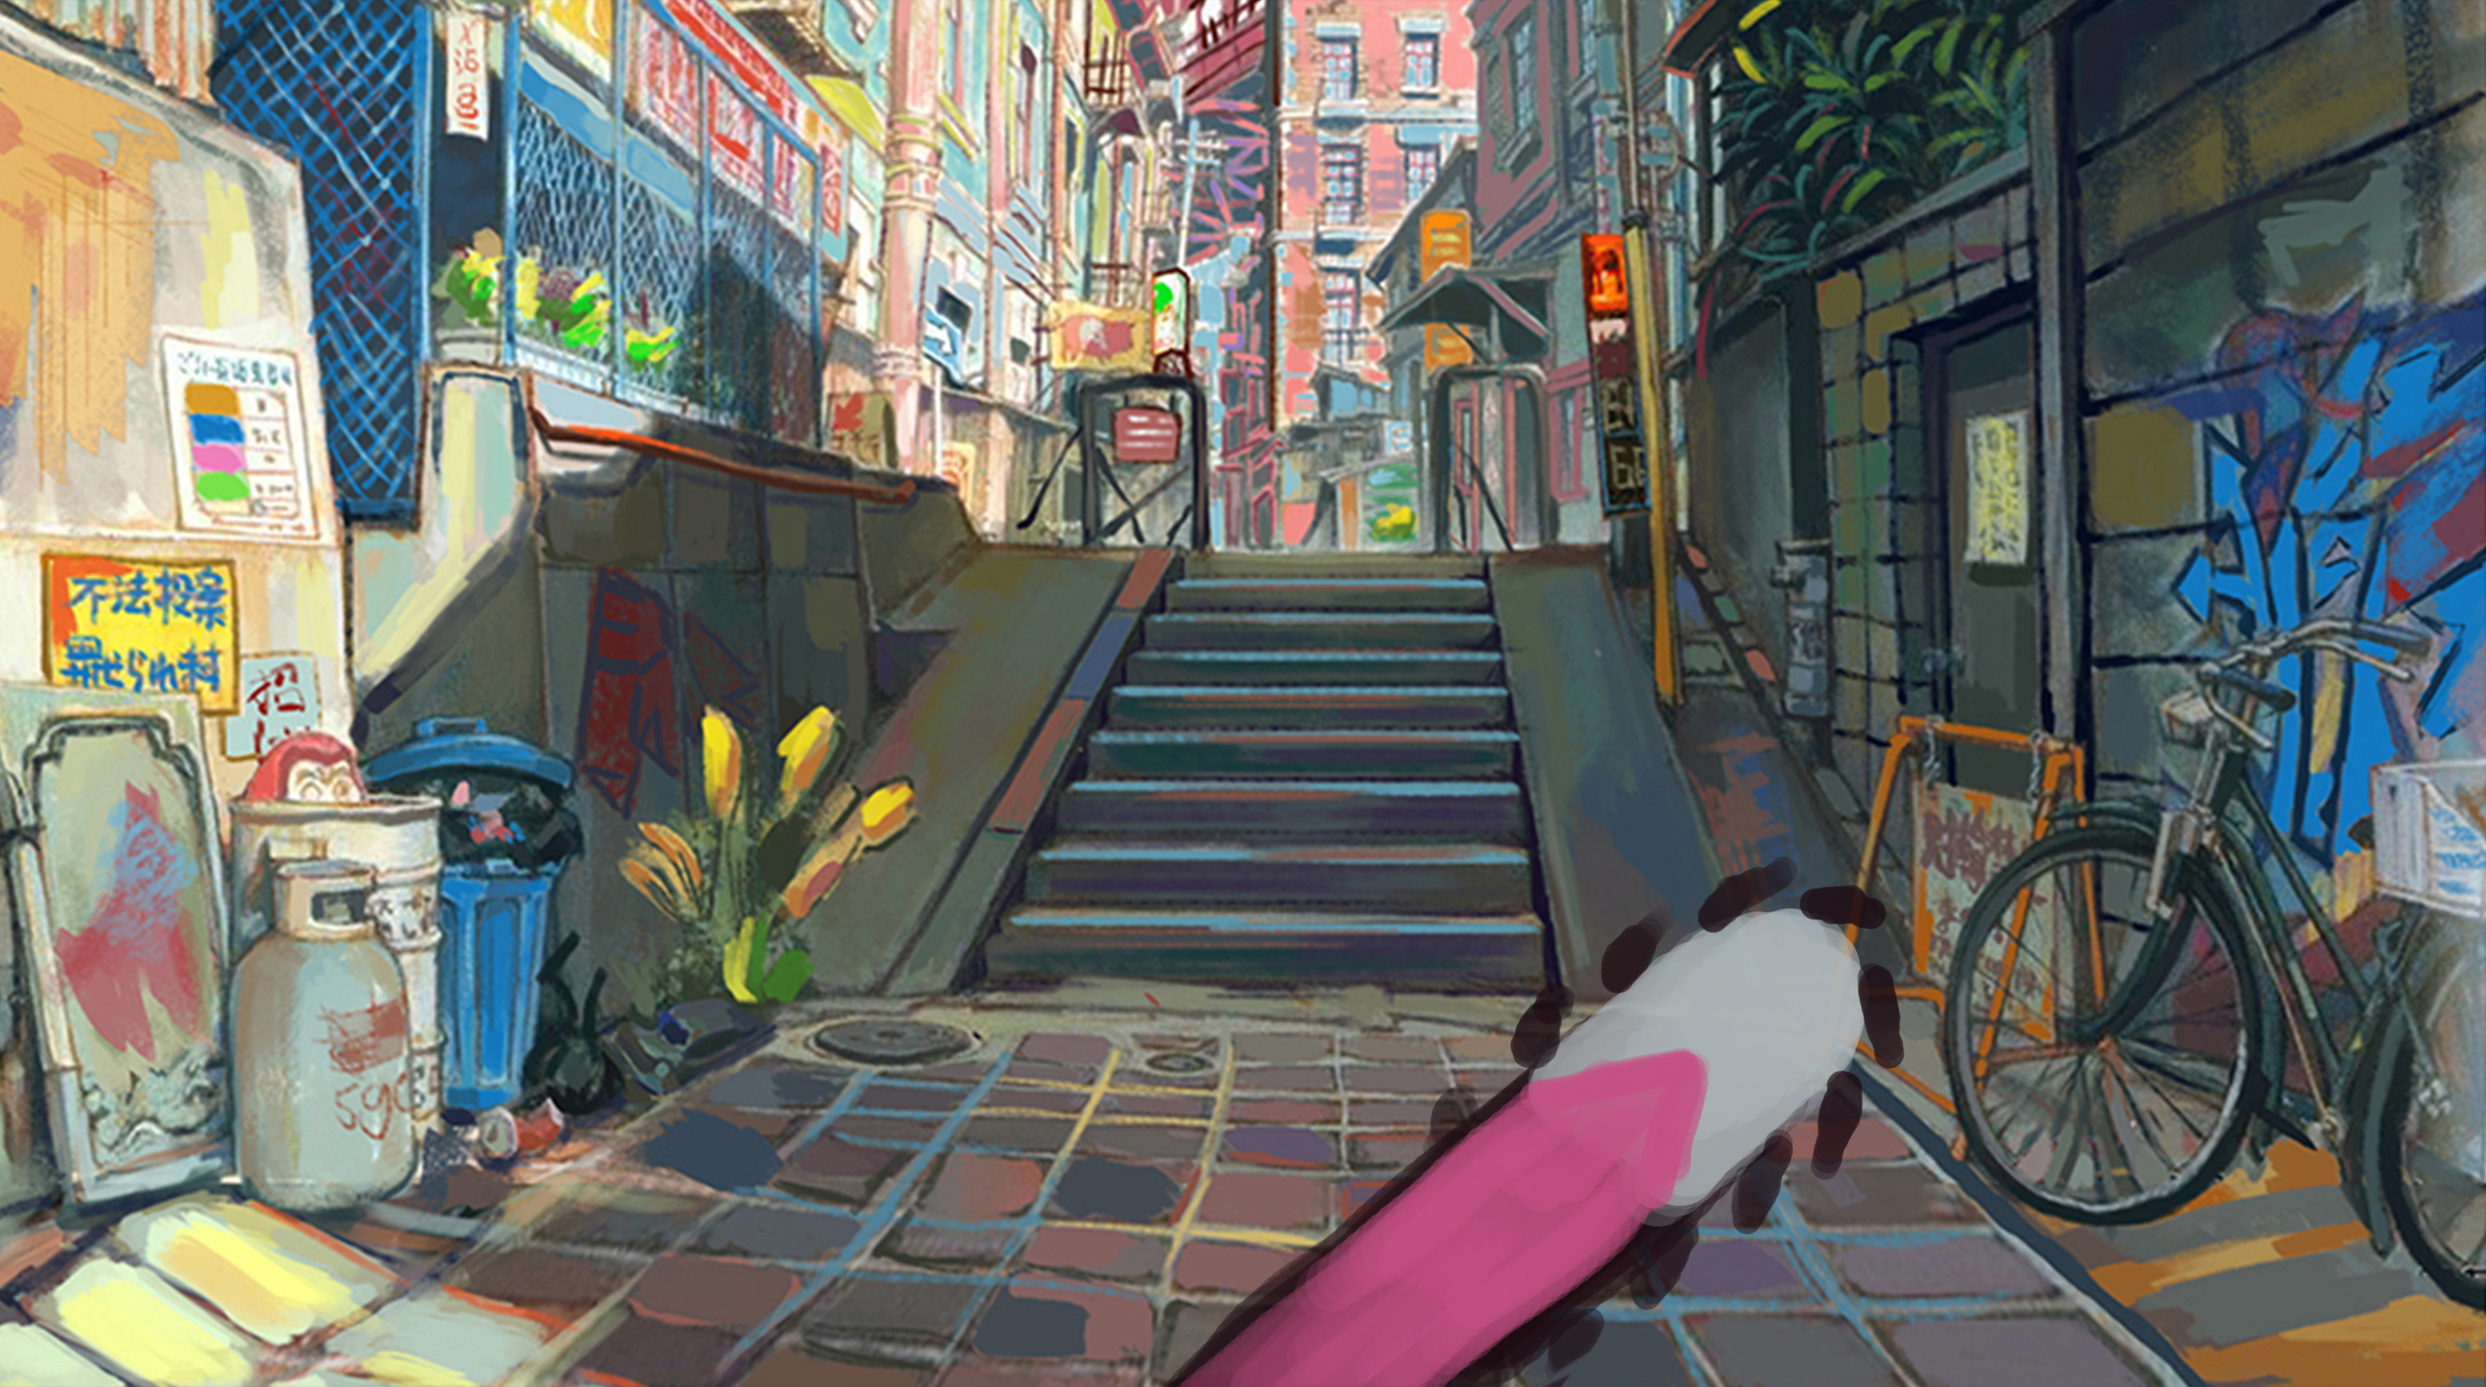 朋克反射游戏场景,该场景属于现代街头涂鸦的场景